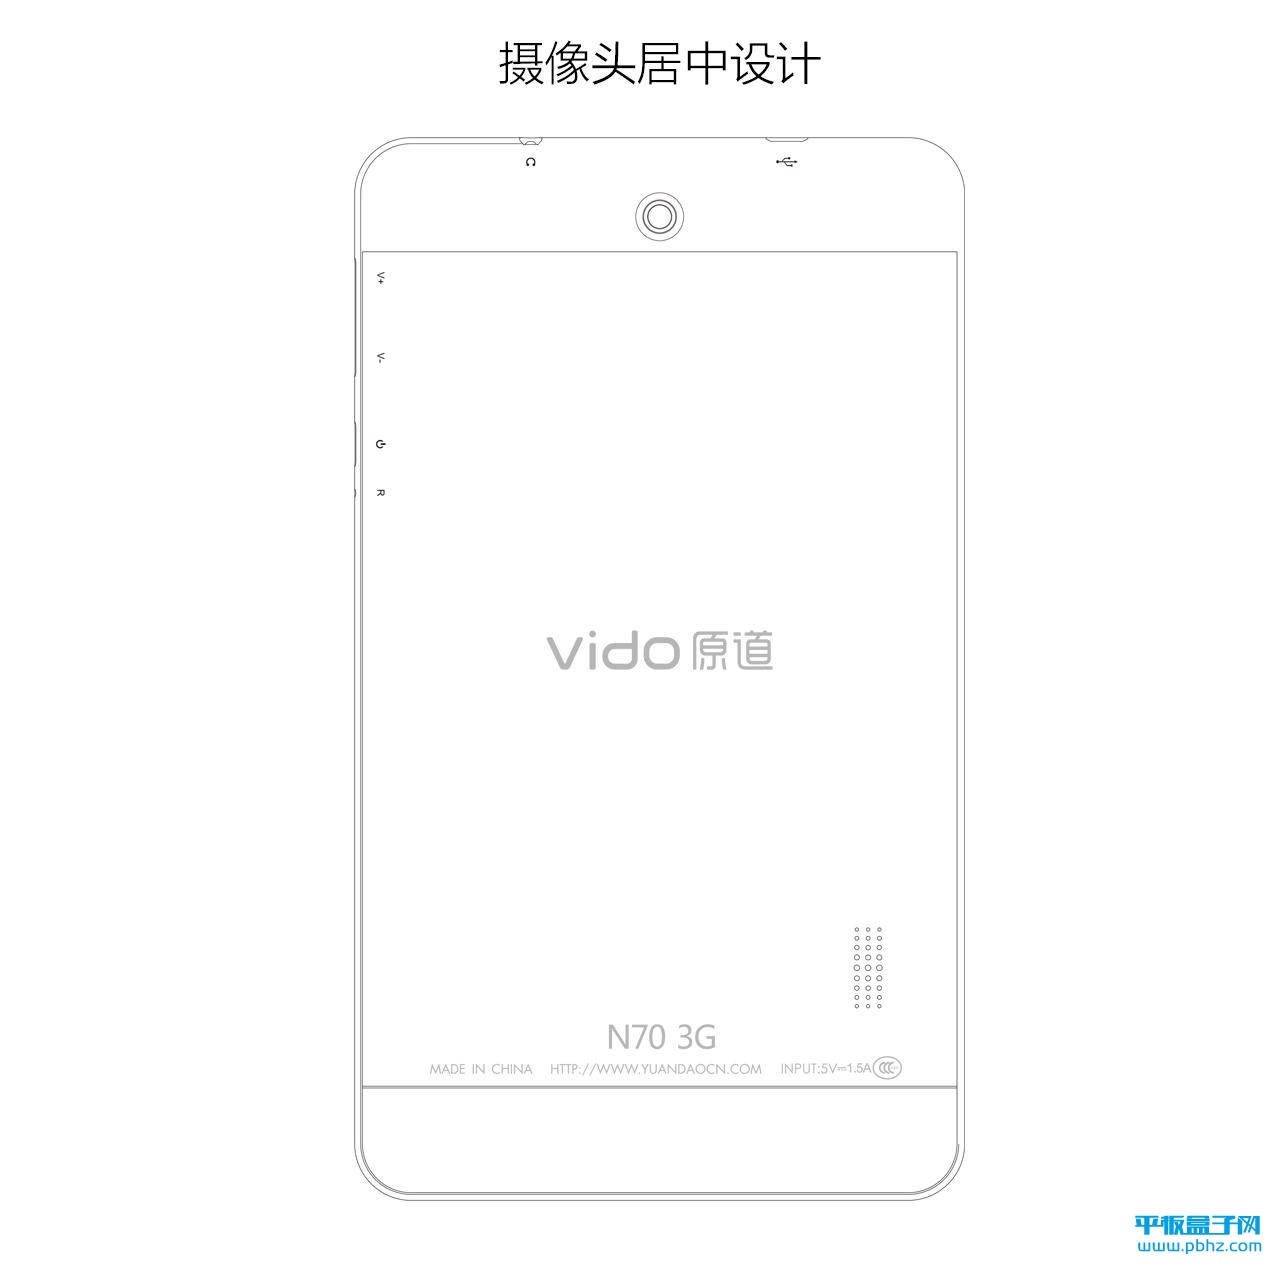 Tablet Vido N70 3G